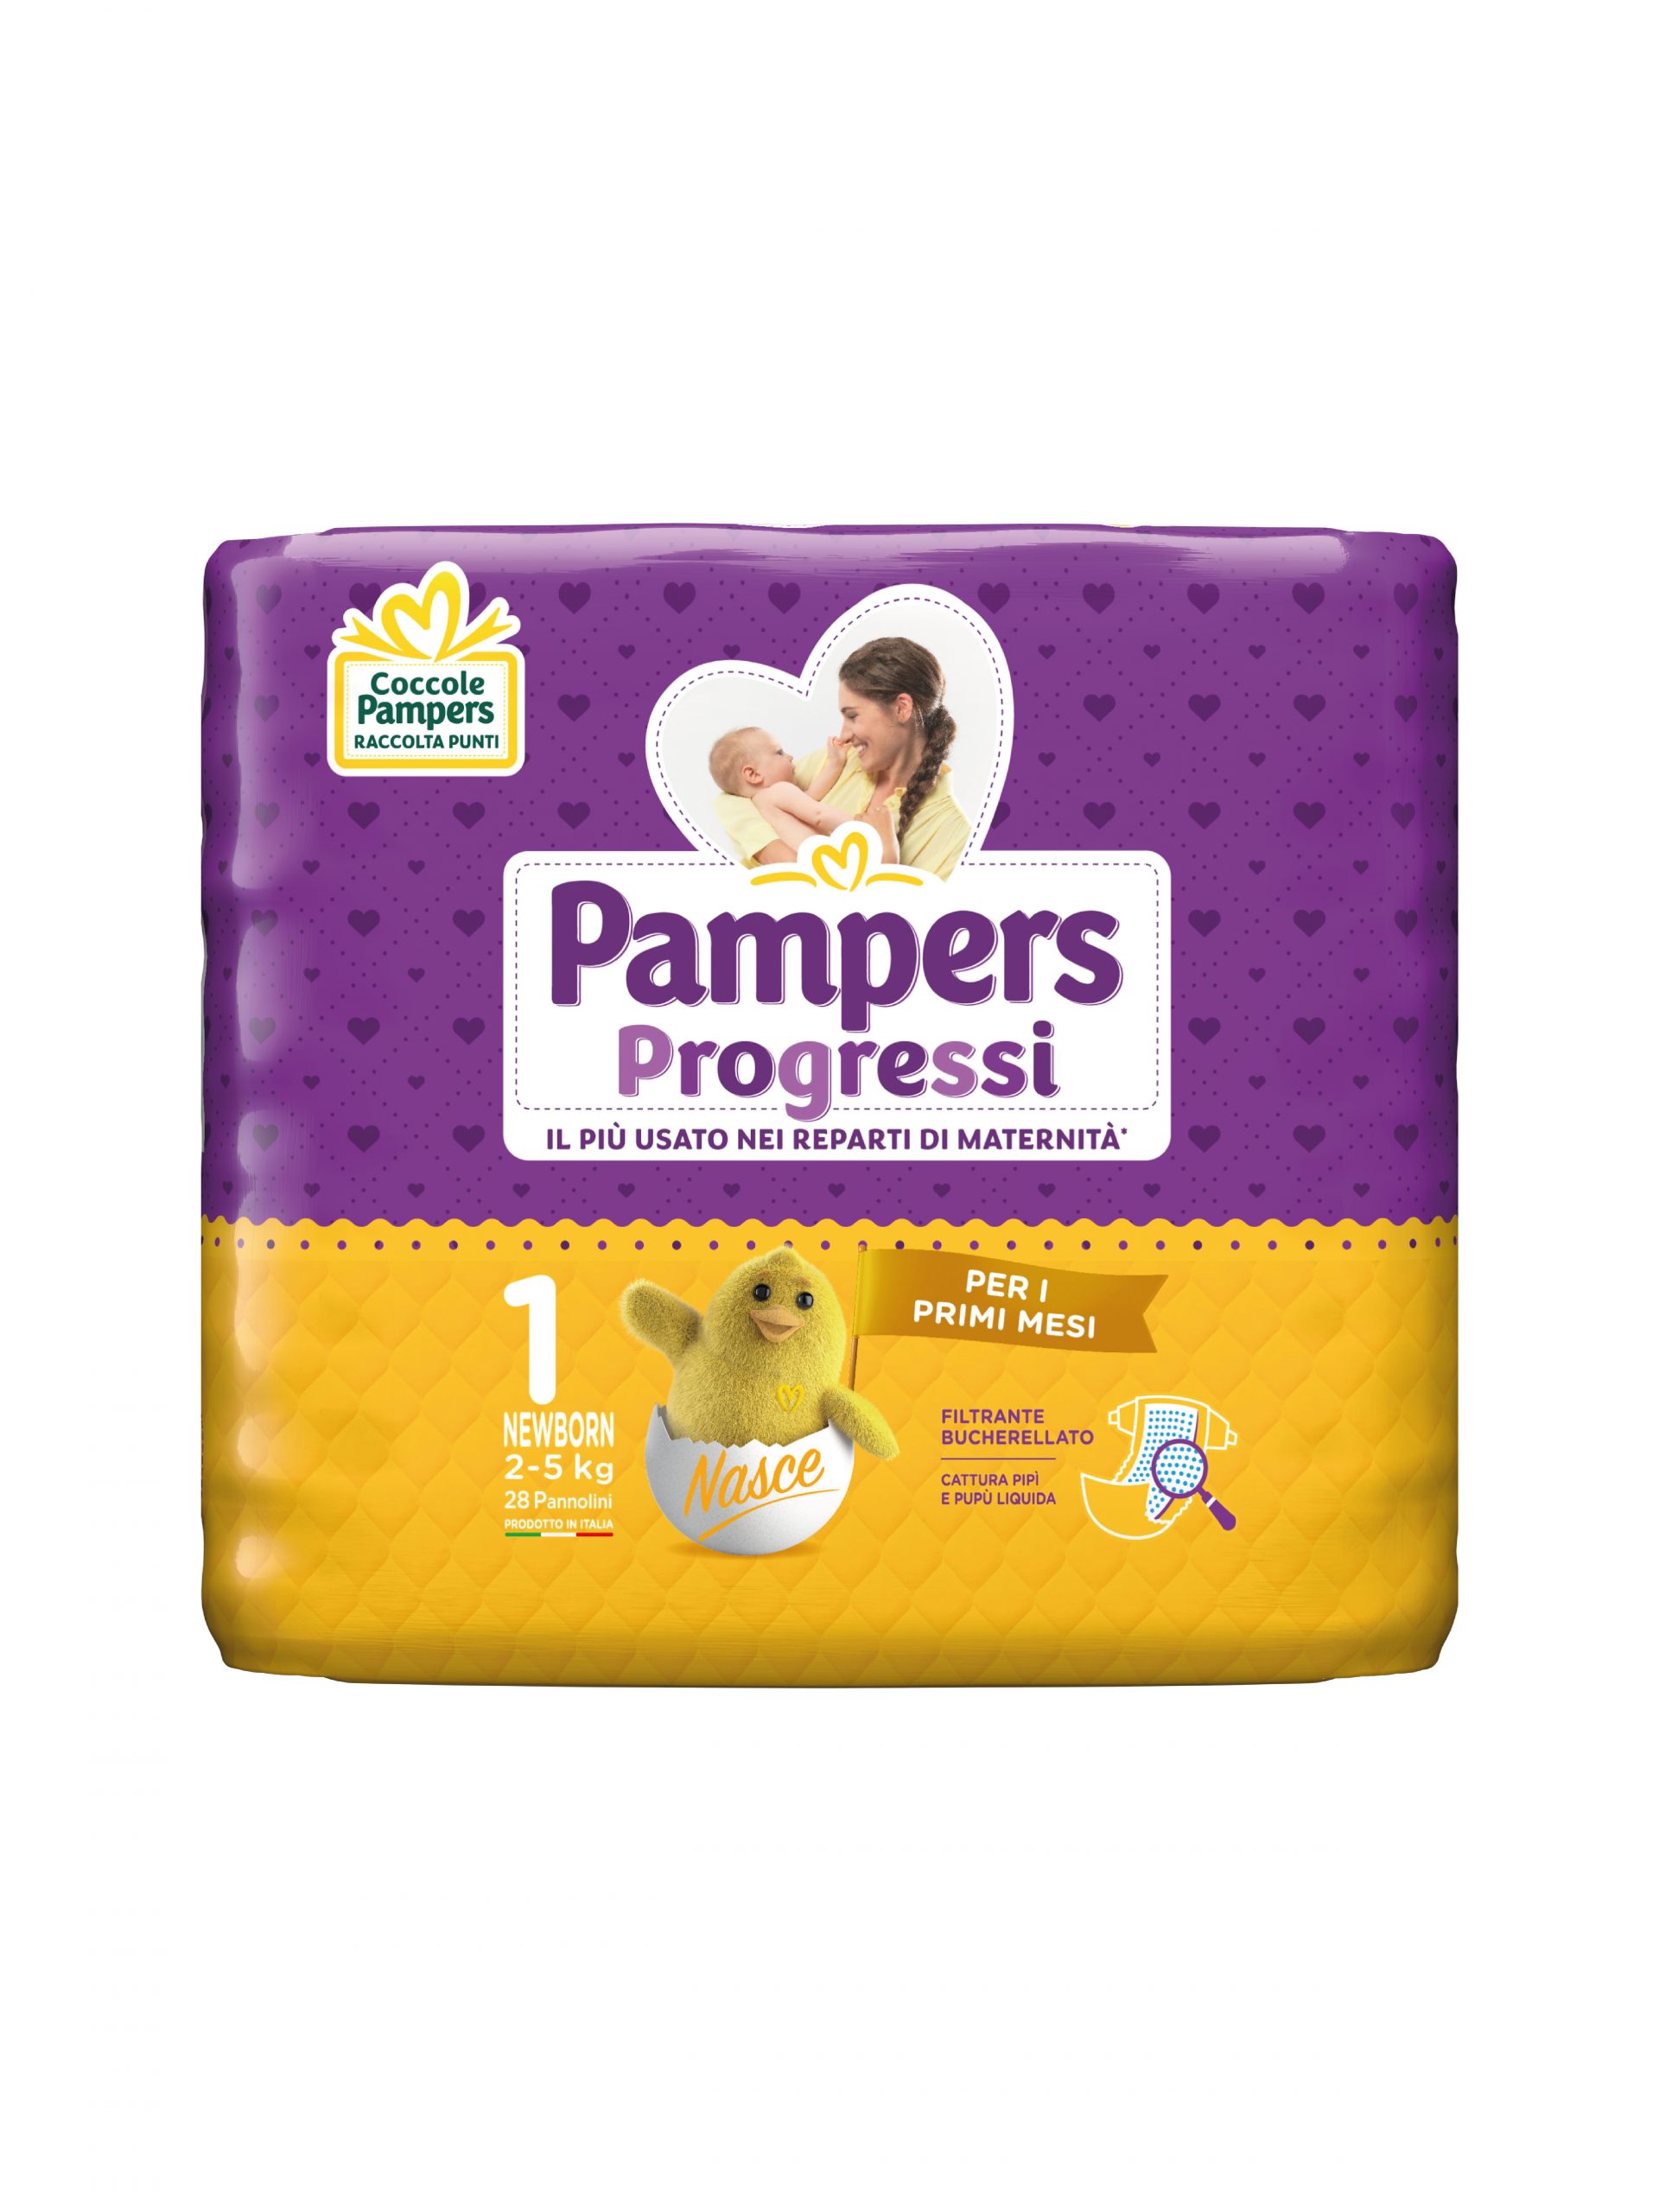 Pampers progressi newborn taglia 1 (2-5 kg) - 28 pz - Pampers